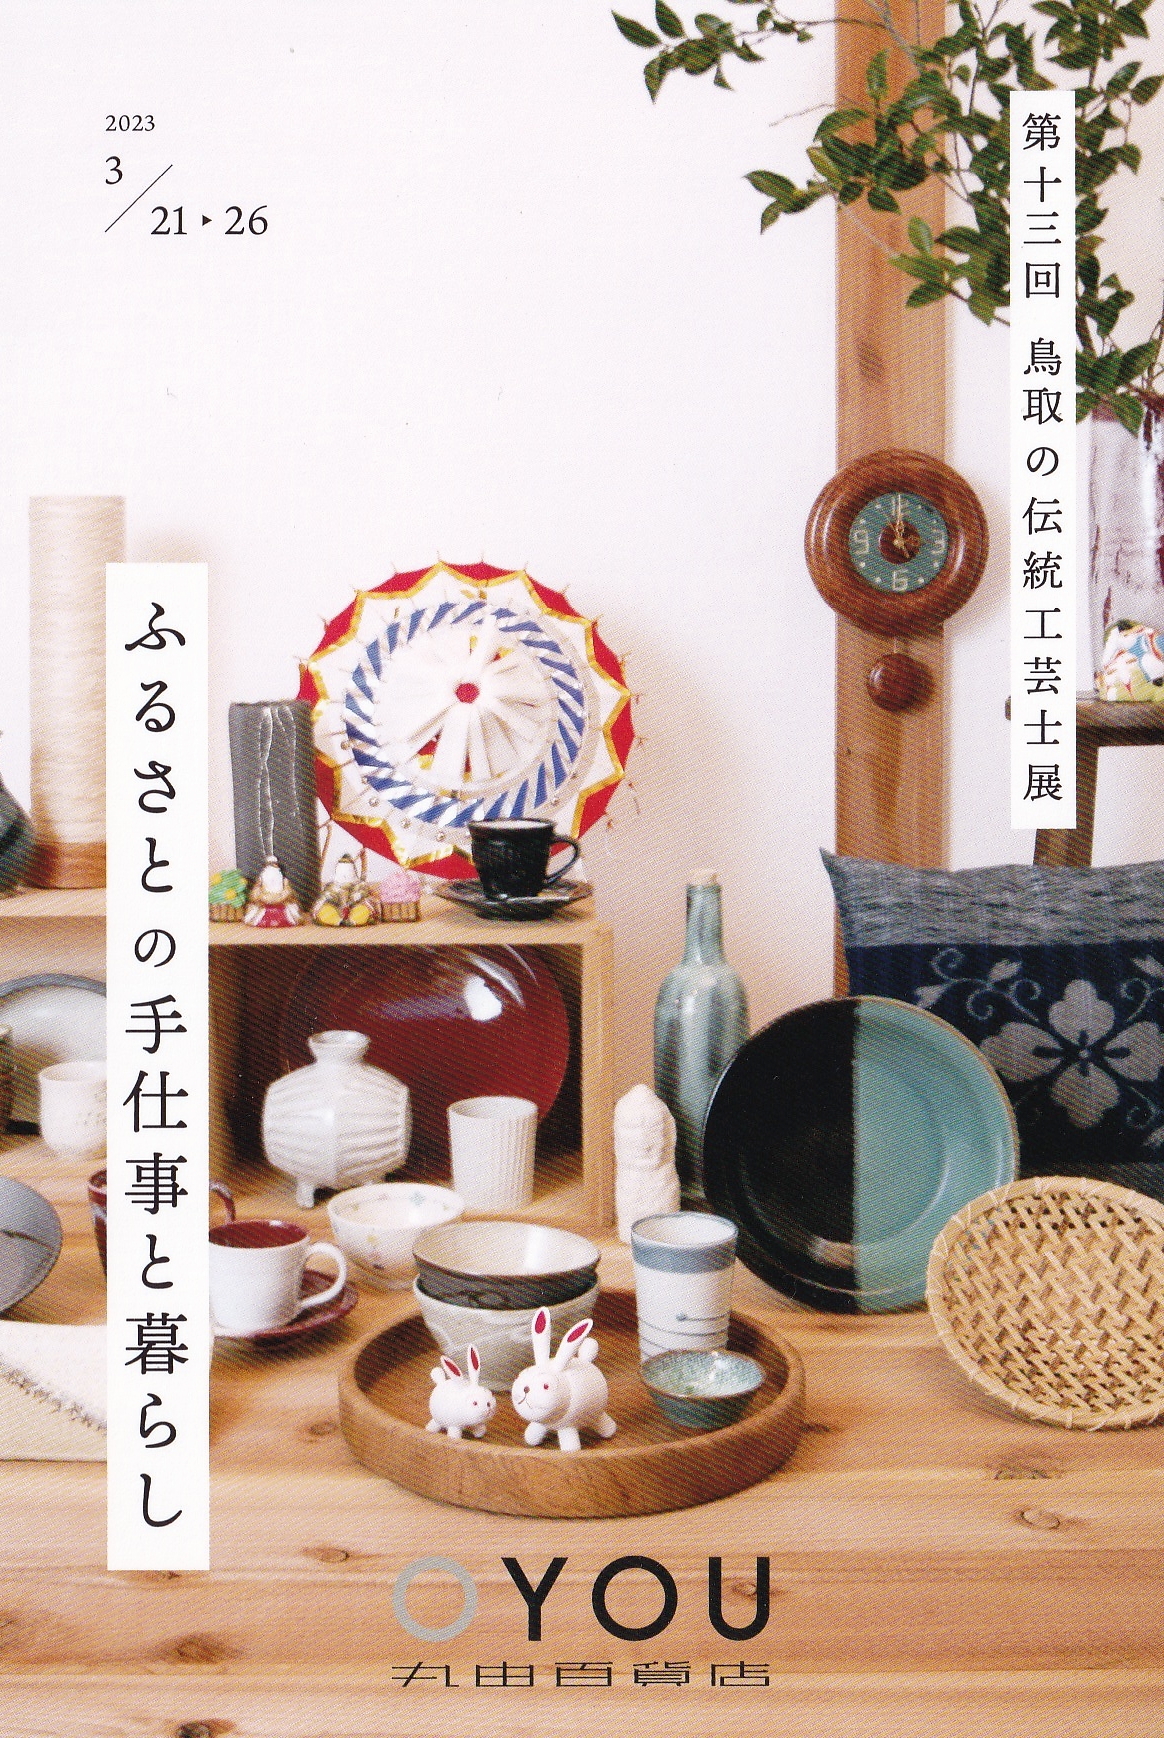 鳥取の伝統工芸士展21日から開催